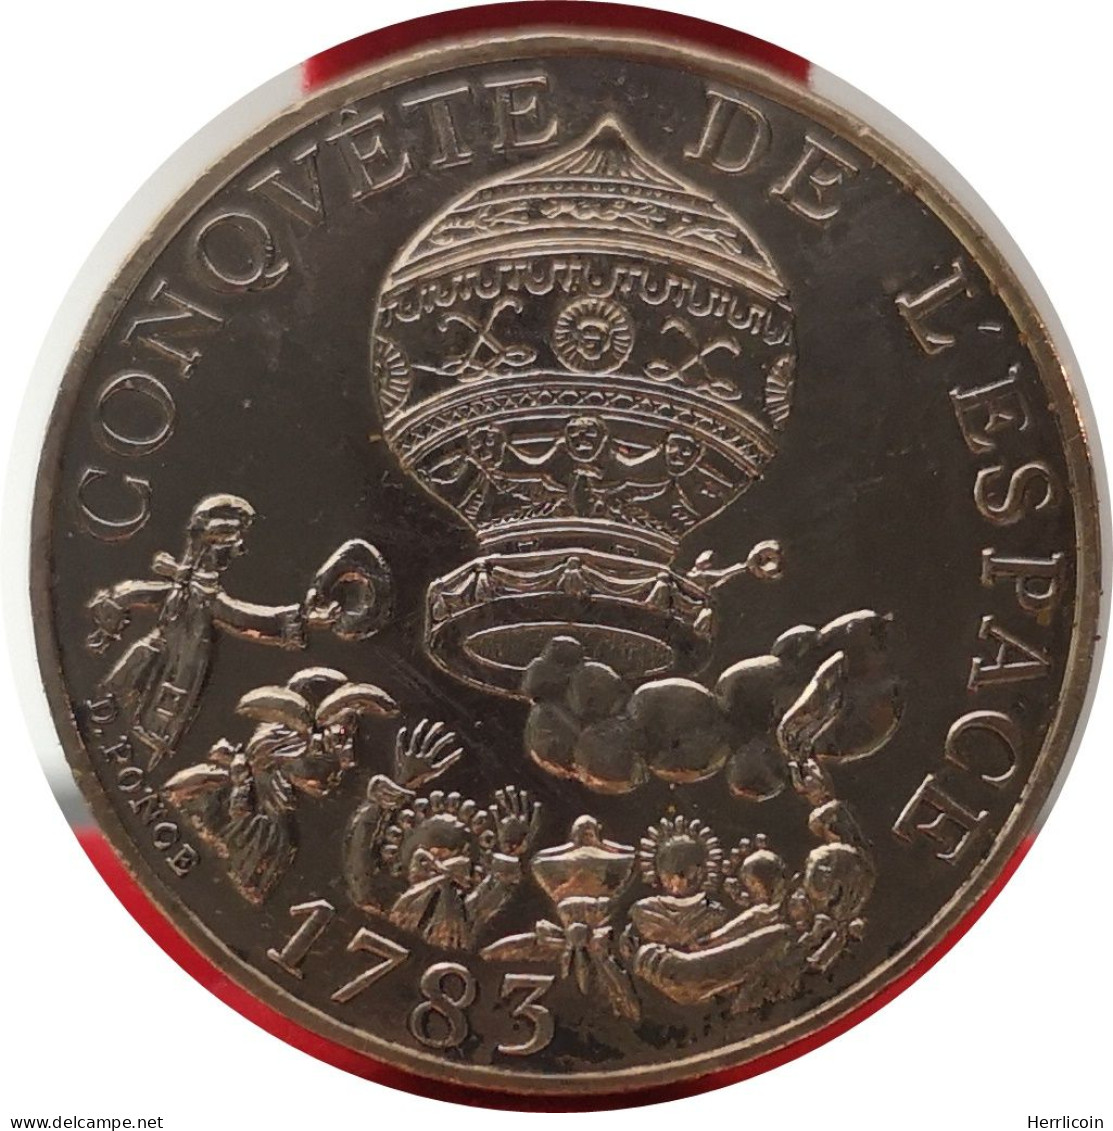 Monnaie France - 1983 Tranche A - 10 Francs Conquête De L'Espace - Herdenking